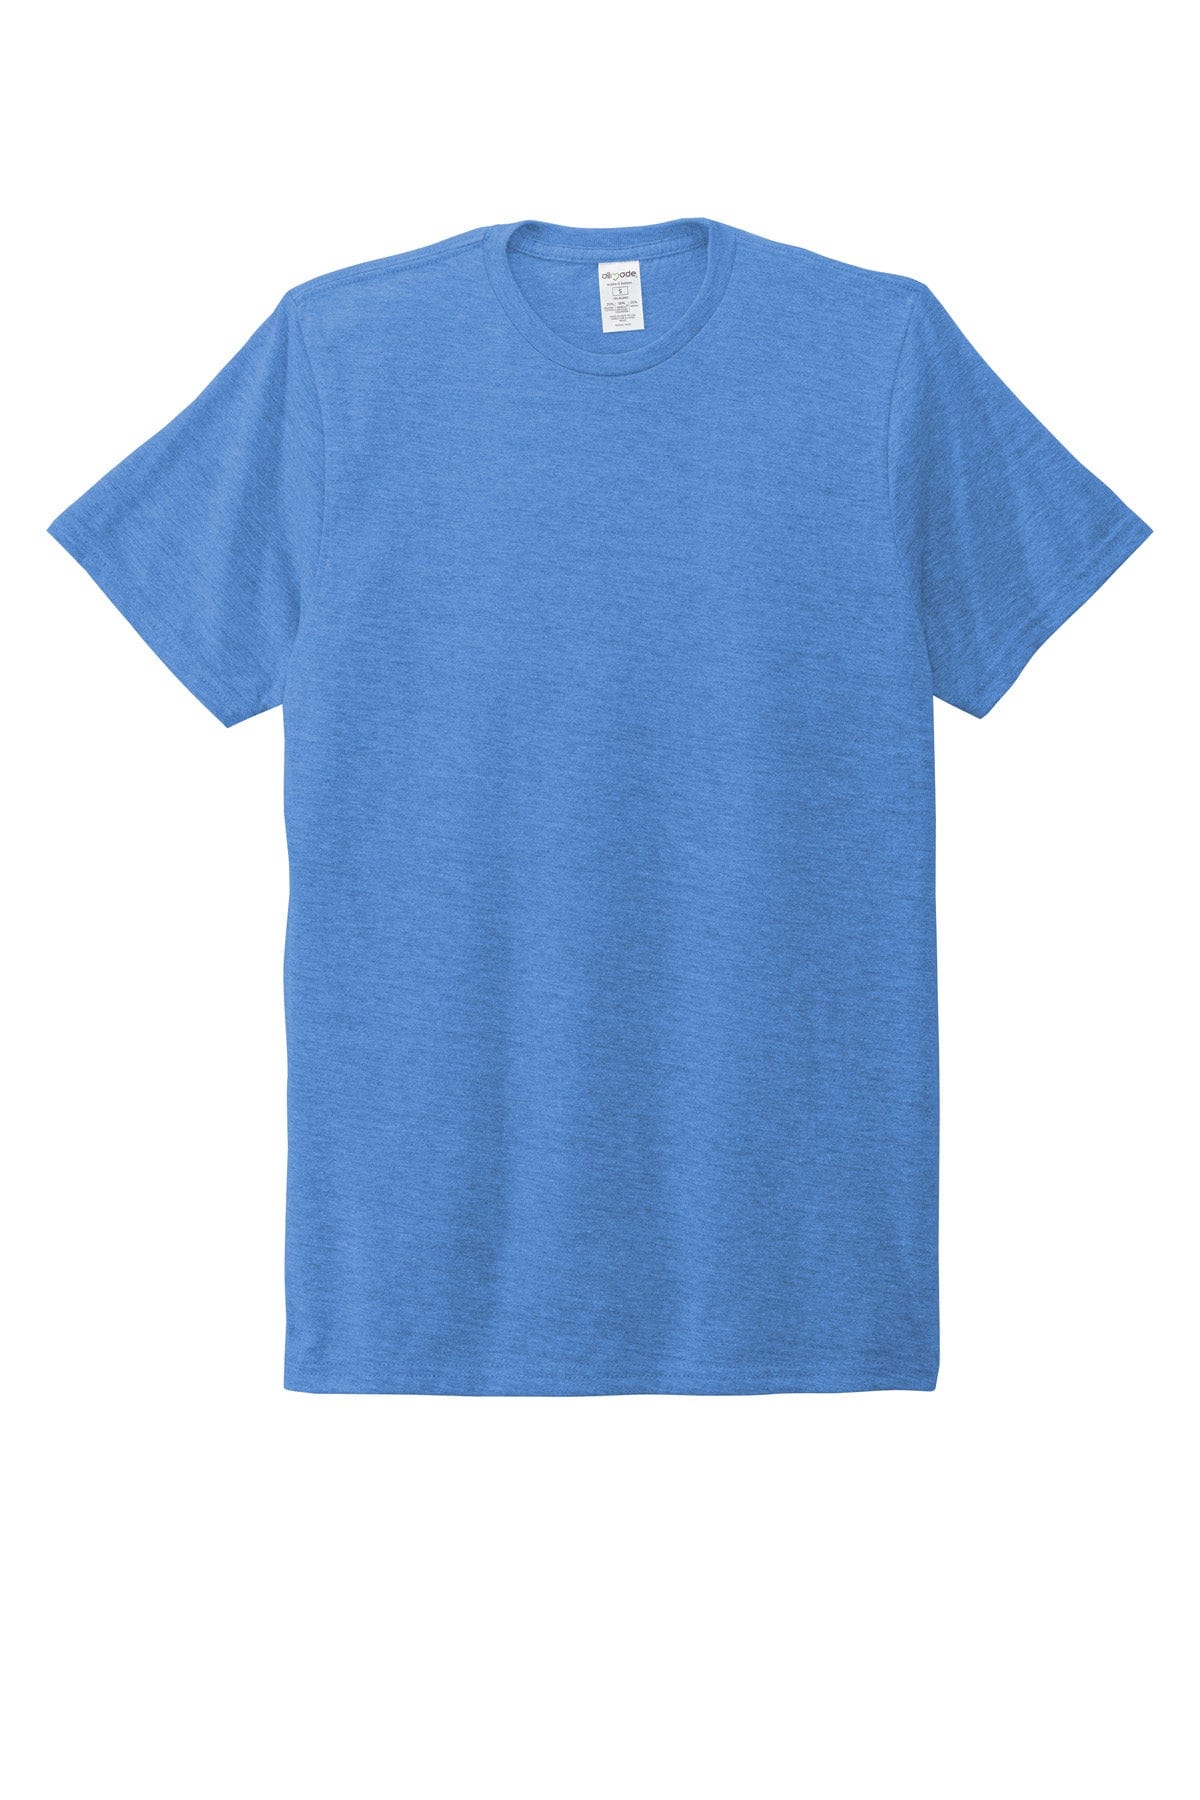 XS / Azure Blue Custom Allmade Unisex Tri-Blend T-Shirt